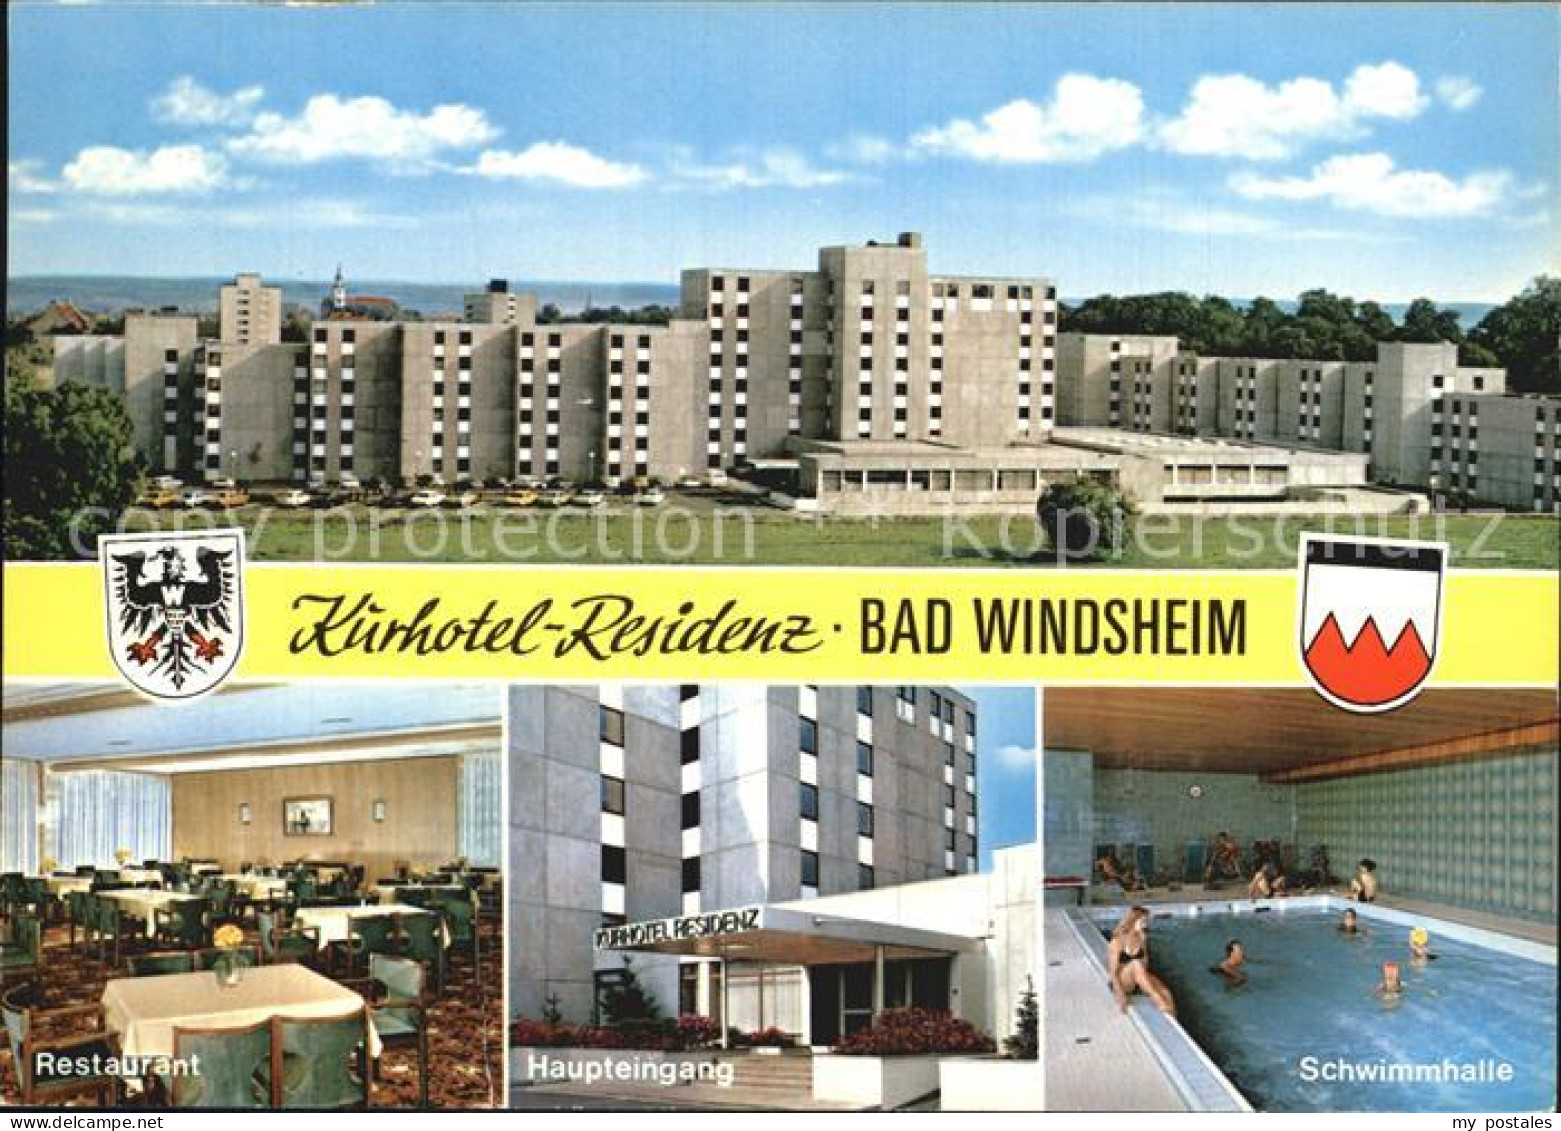 72578405 Bad Windsheim Kurhotel-Residenz Schwimmhalle Restaurant Bad Windsheim - Bad Windsheim